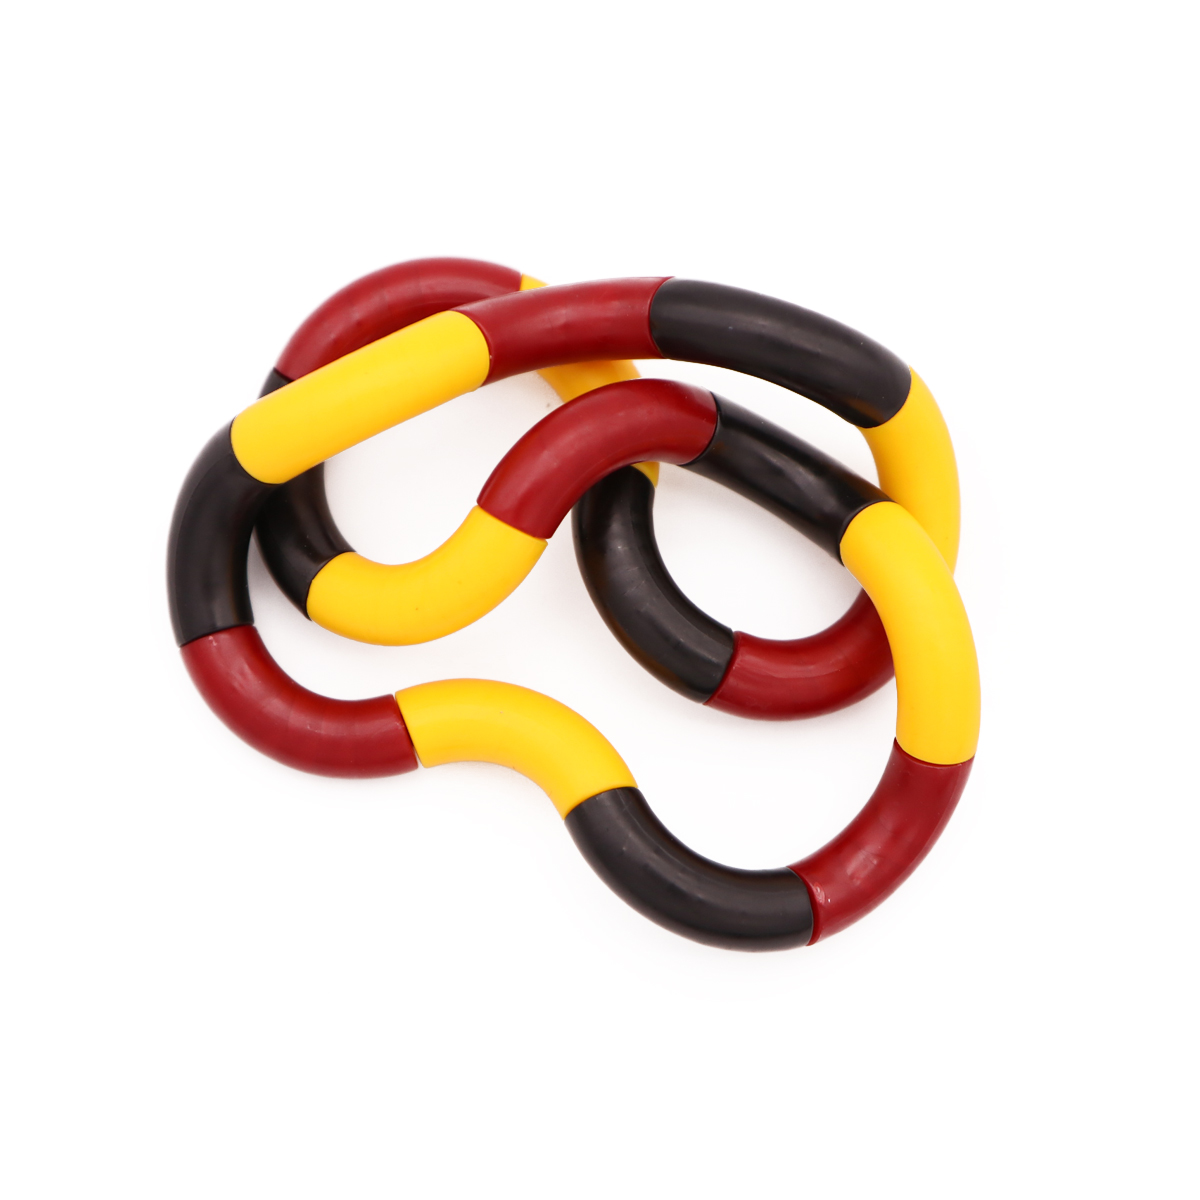 Zwitsers Kapper Evaluatie Twister Twist, Fidget Toy - Rood/Geel/Zwart kopen? | EXPO